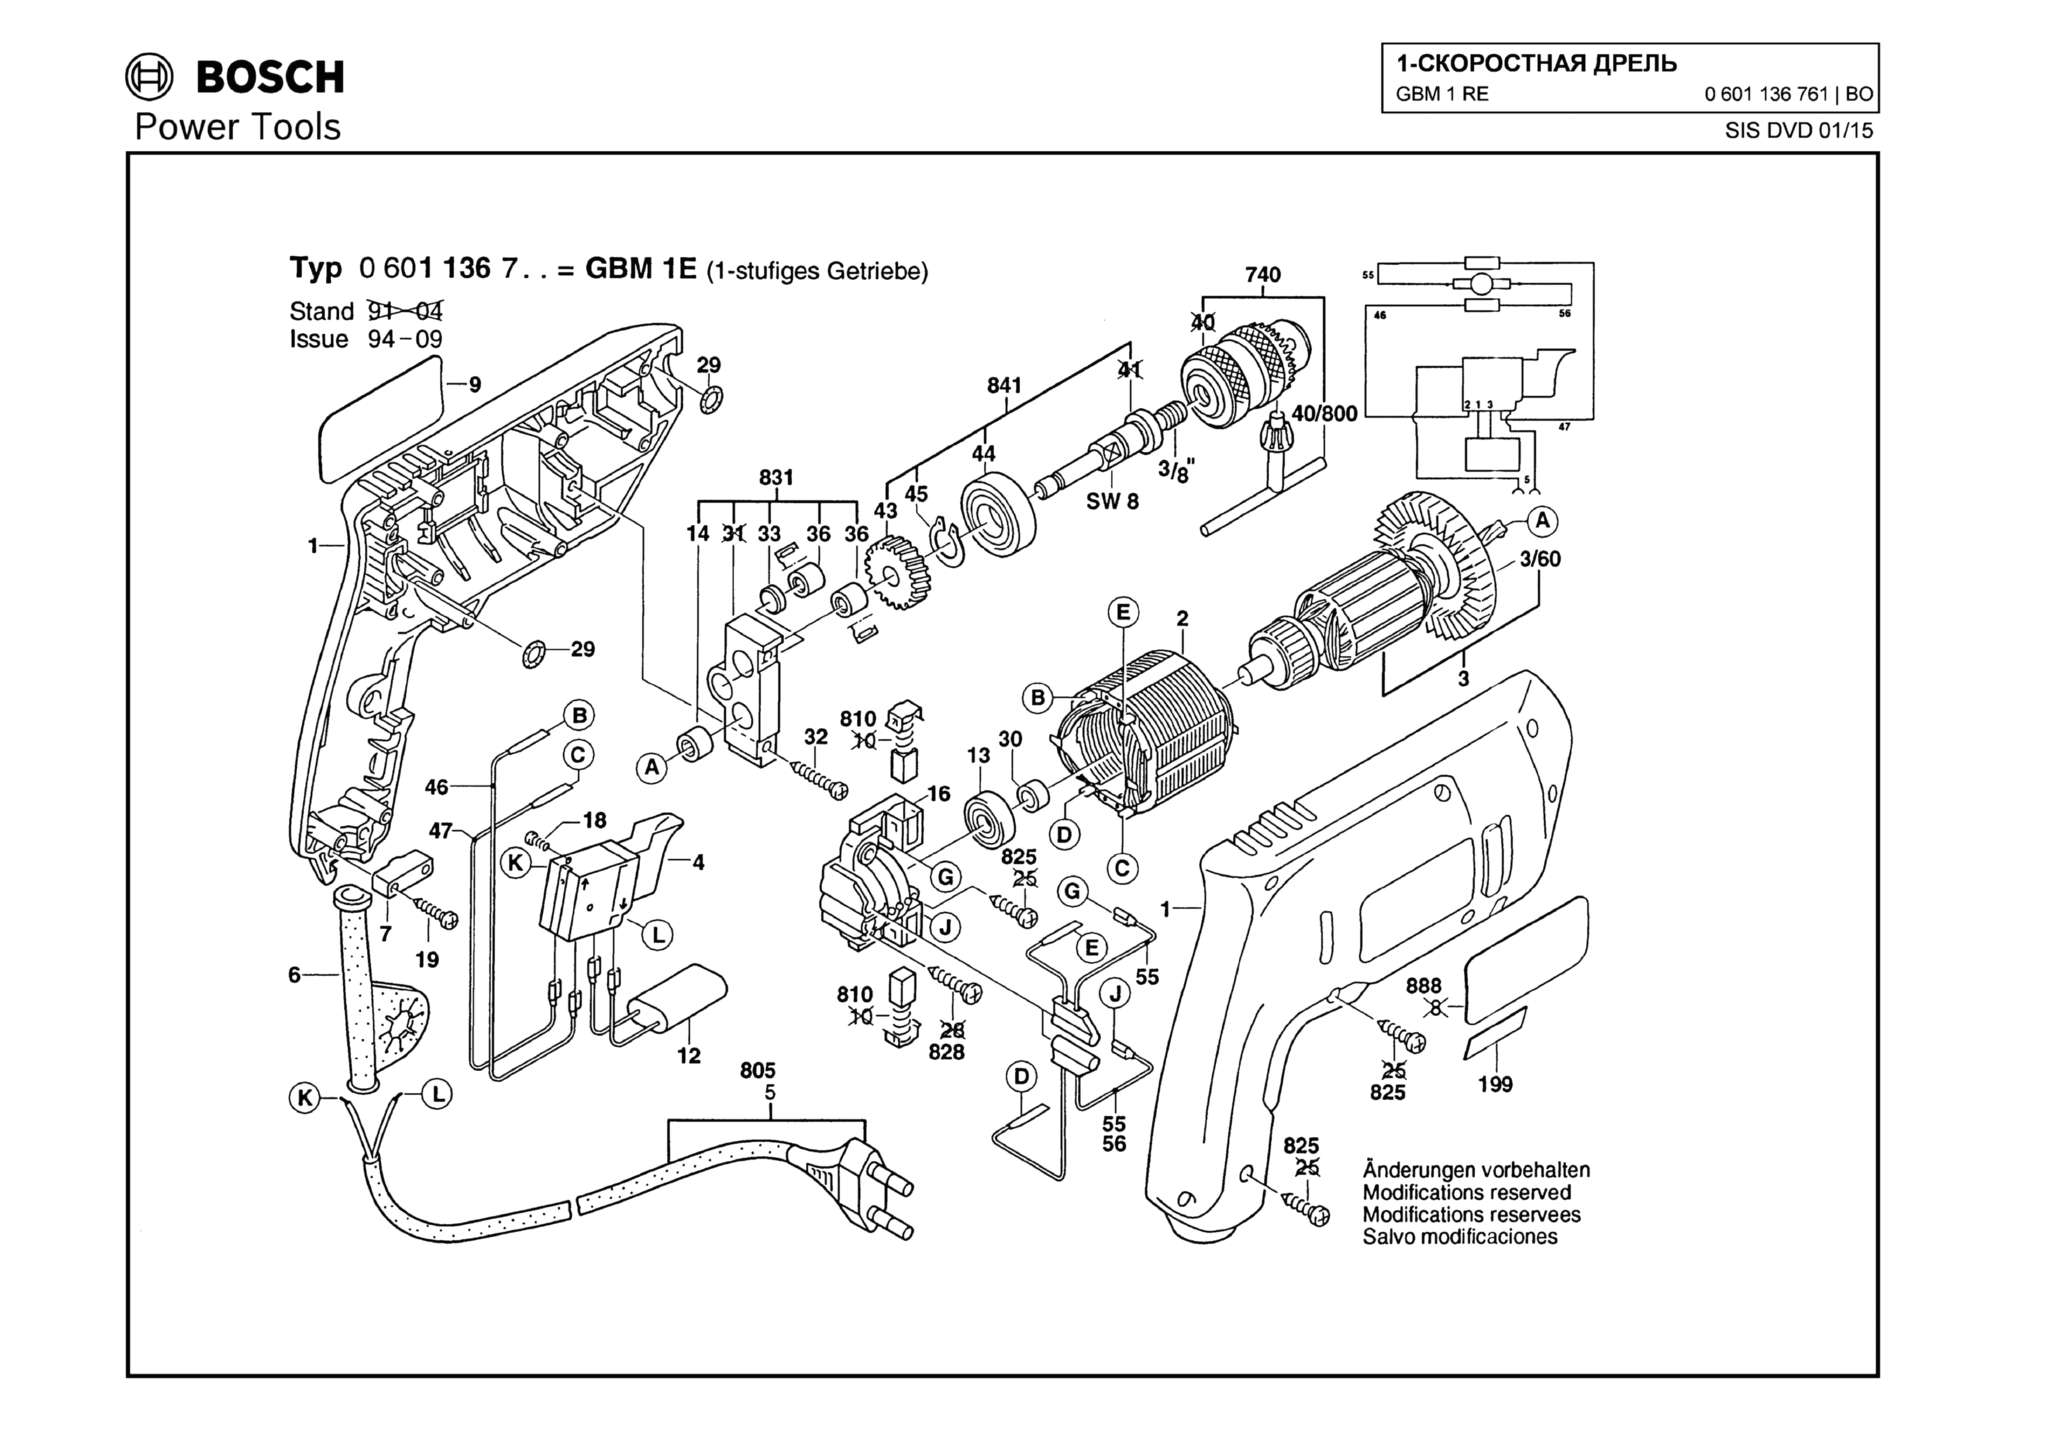 Запчасти, схема и деталировка Bosch GBM 1 RE (ТИП 0601136761)